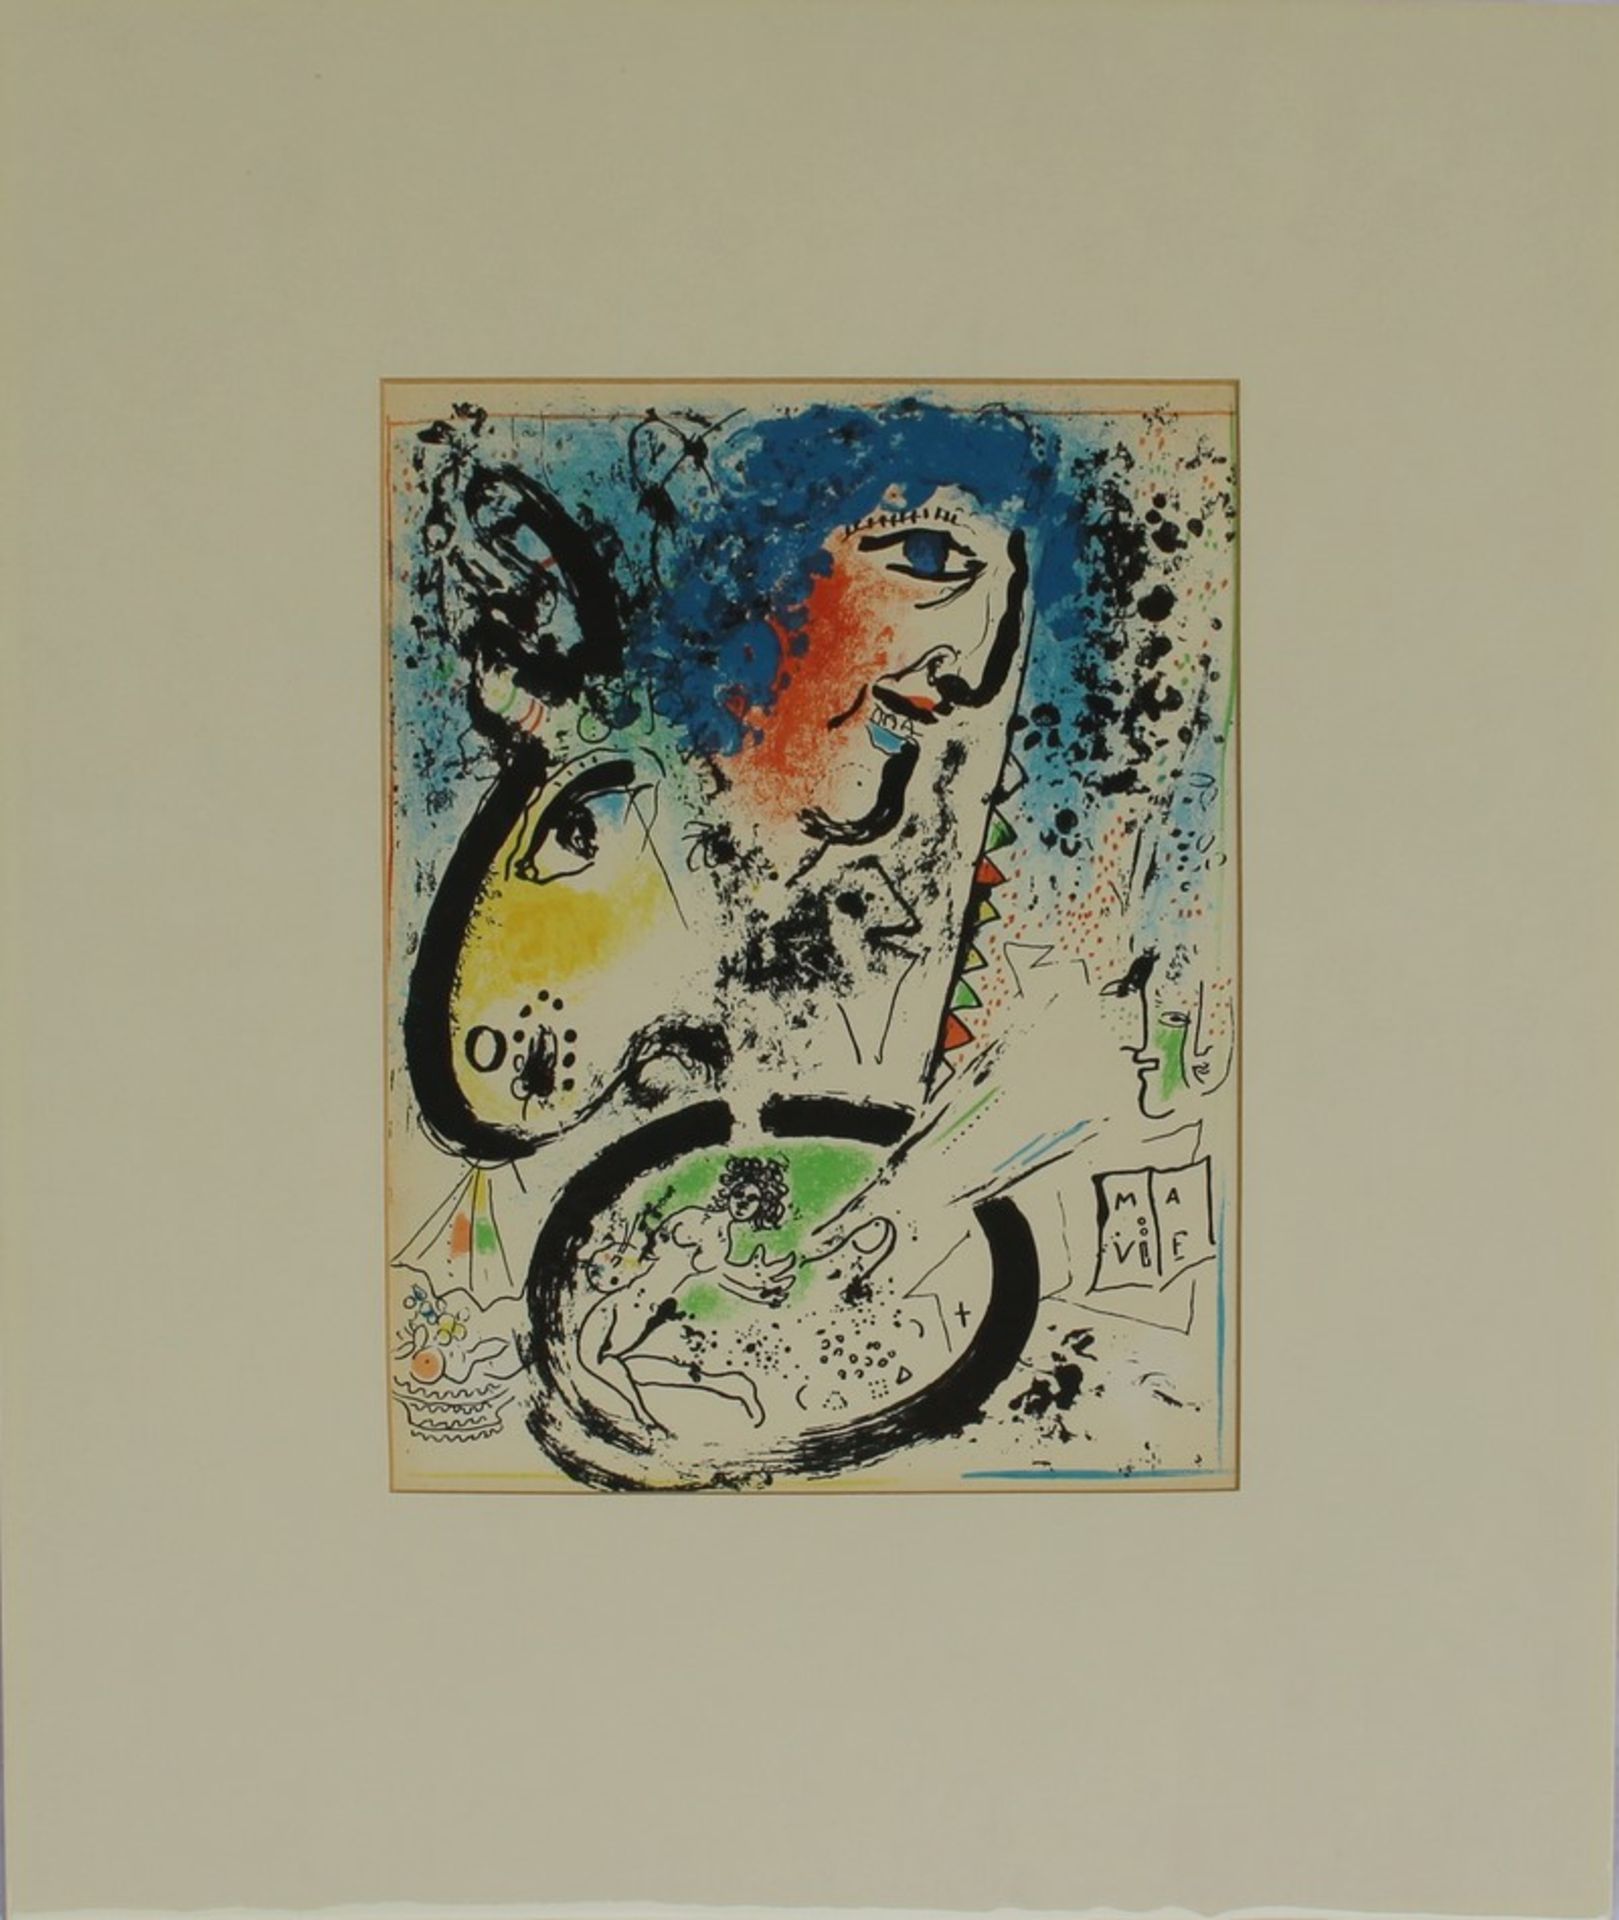 Chagall, Marc"Selbstporträt", Farblitho., für d. Werkverzeichnis der Lithogr., Bd. I, 1960,